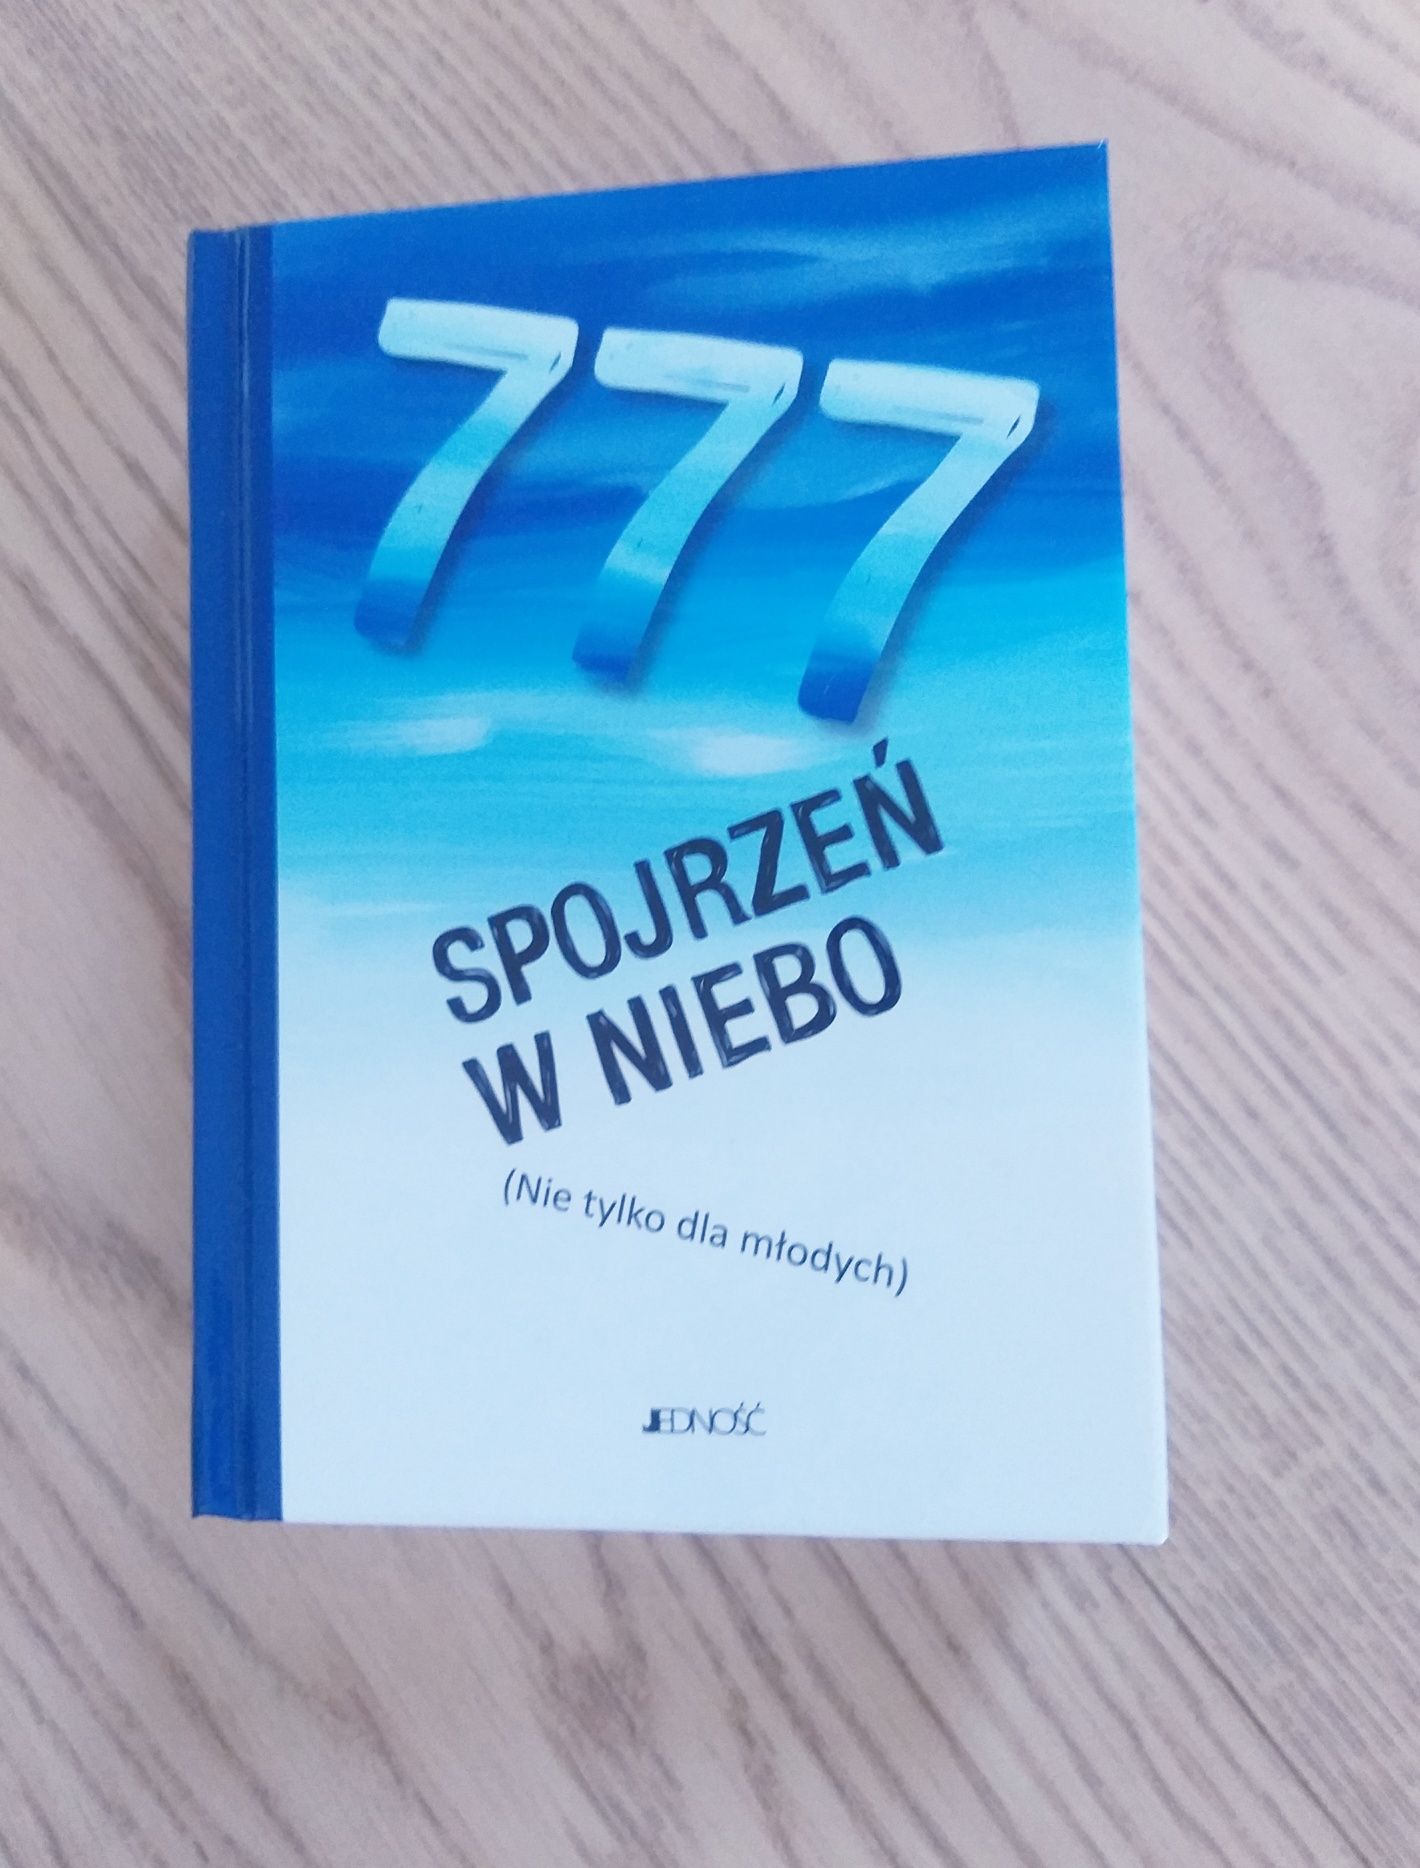 Nowa książka ks. Stefana Radziszewskiego "777 spojrzeń w niebo"